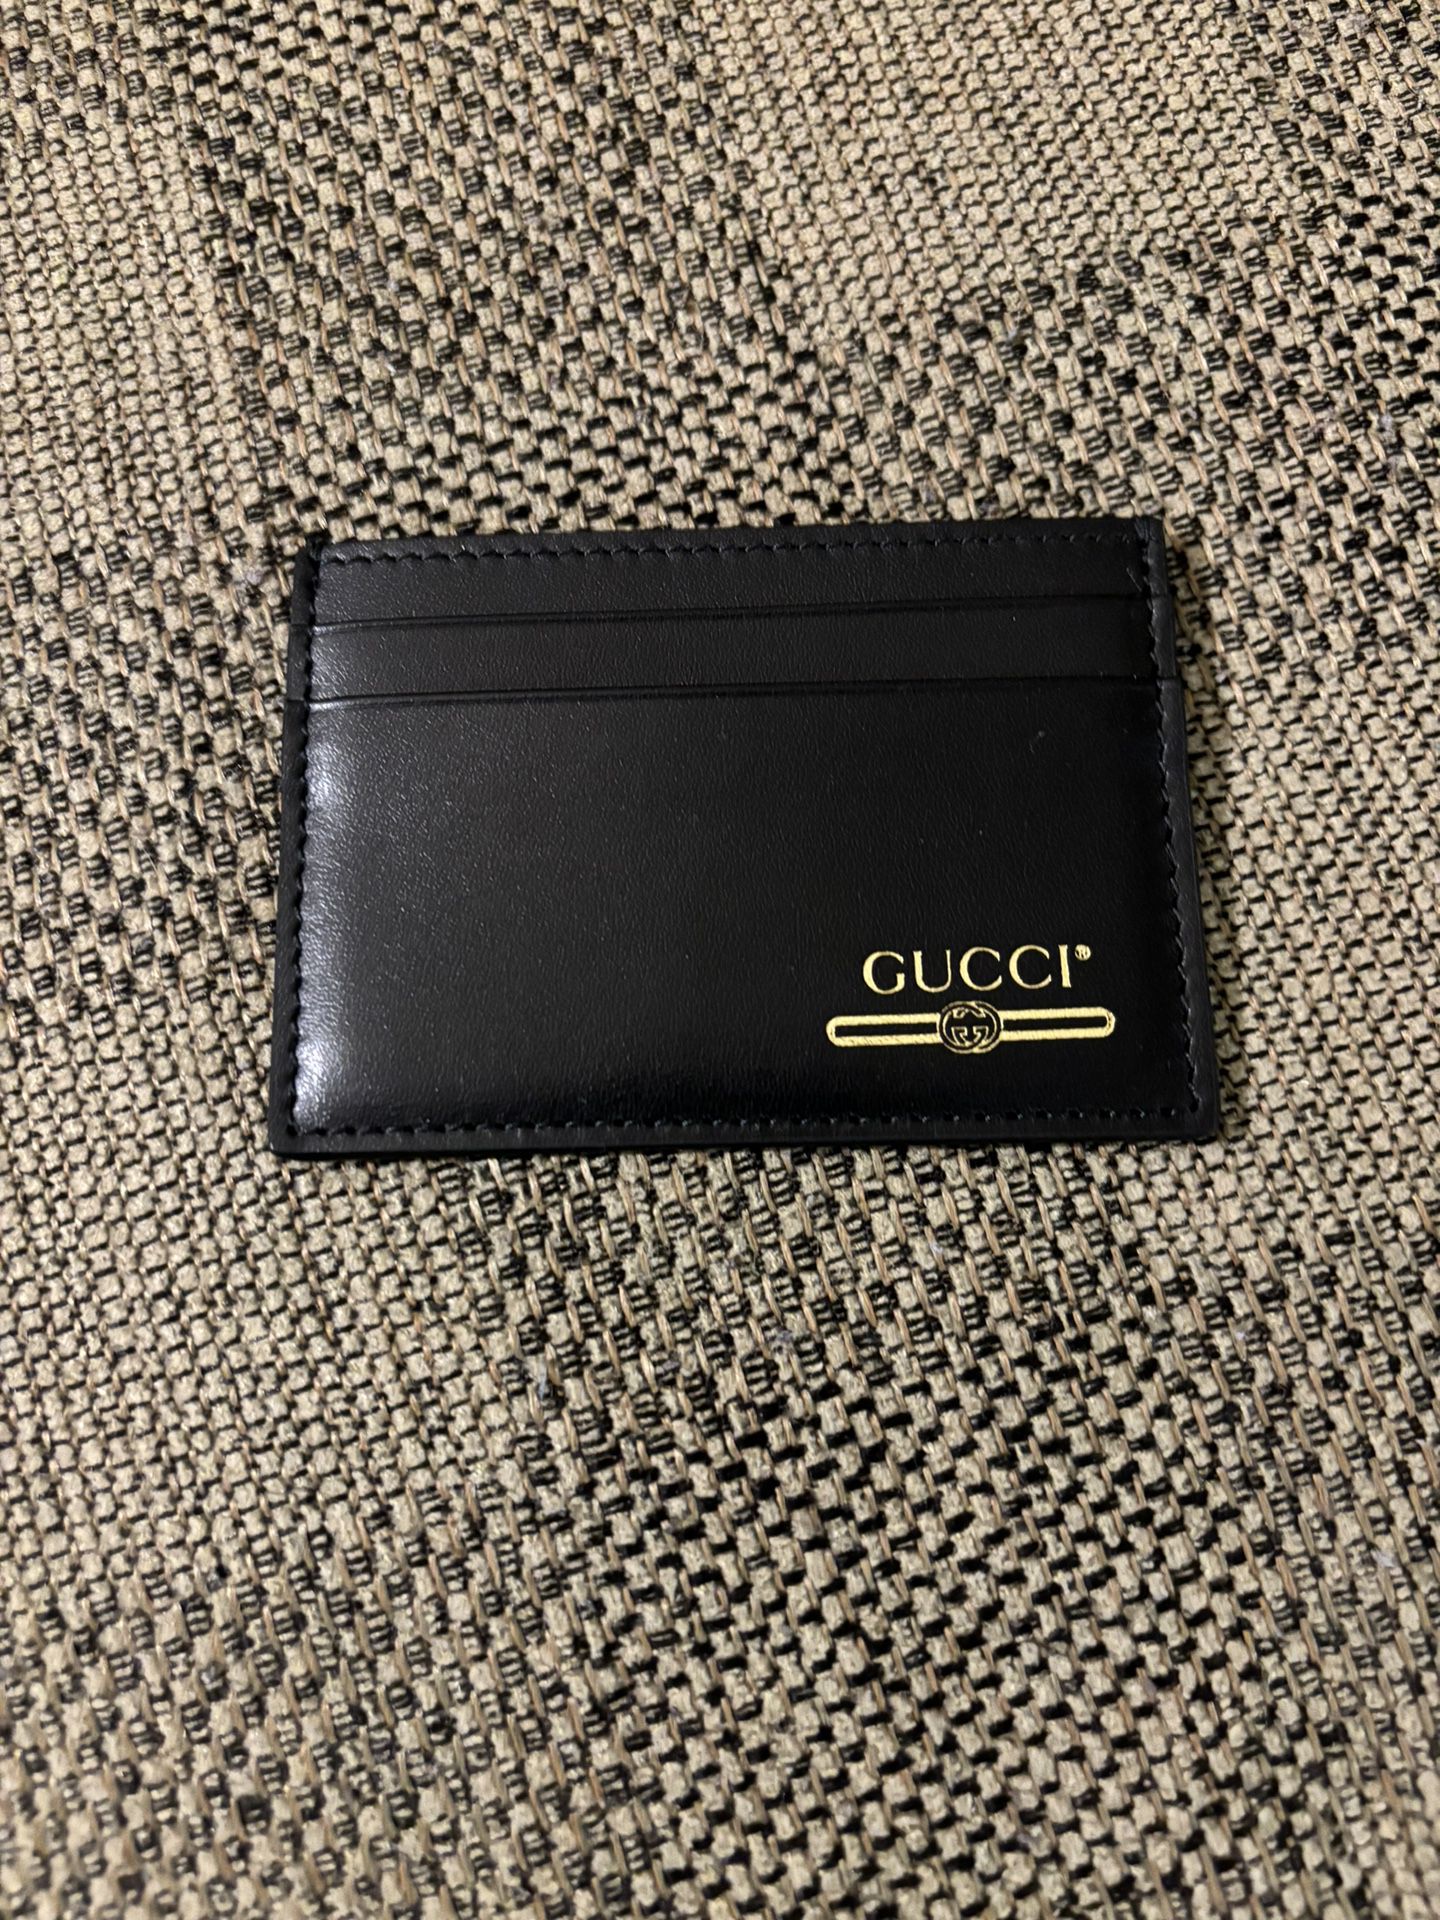 New Gucci